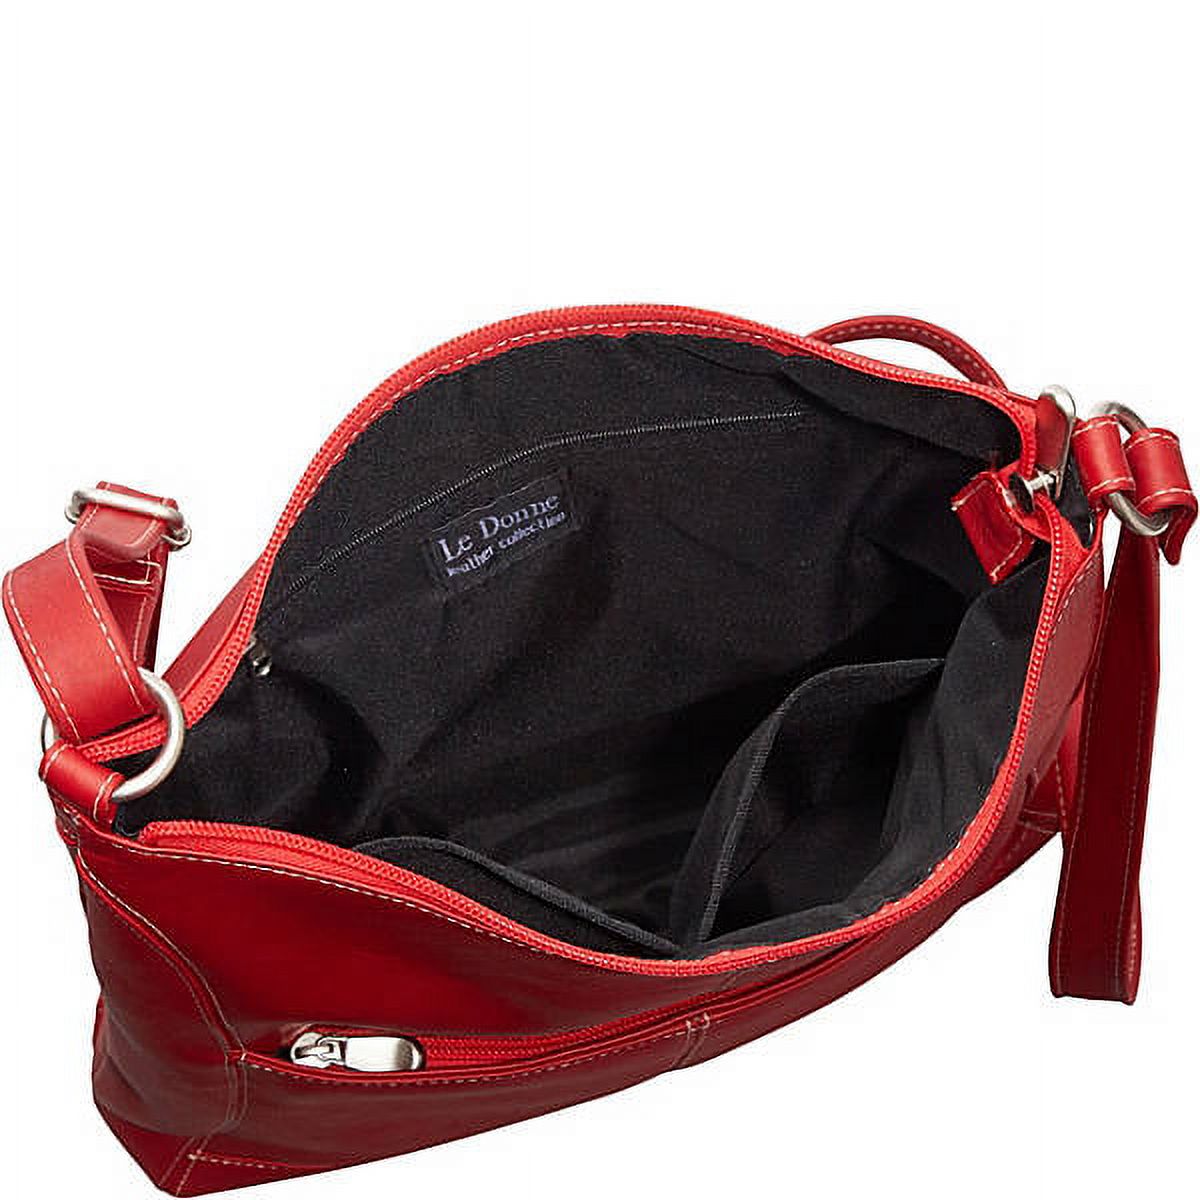 Le Donne Leather Easy Slip Crossbody Shoulder Bag LD-7052 - image 3 of 5